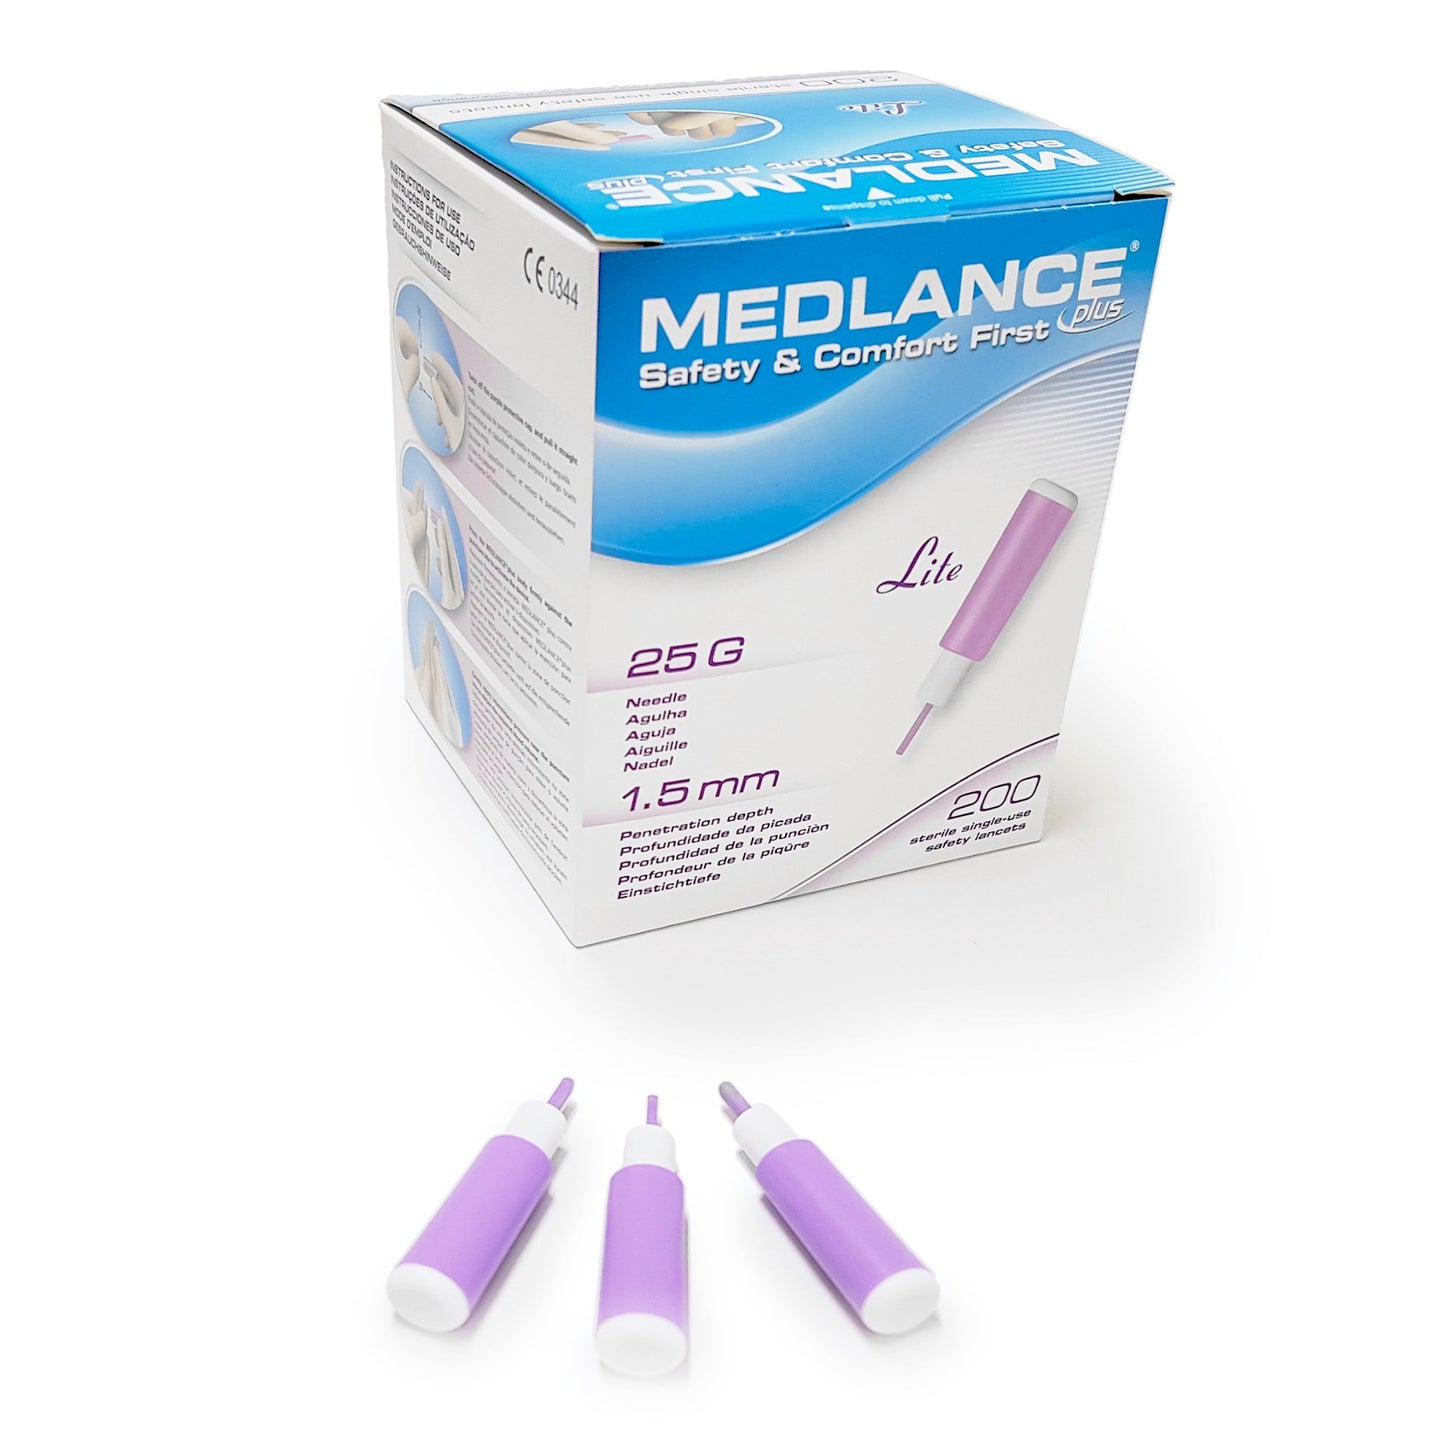 Medlance® Plus Safety Lancet